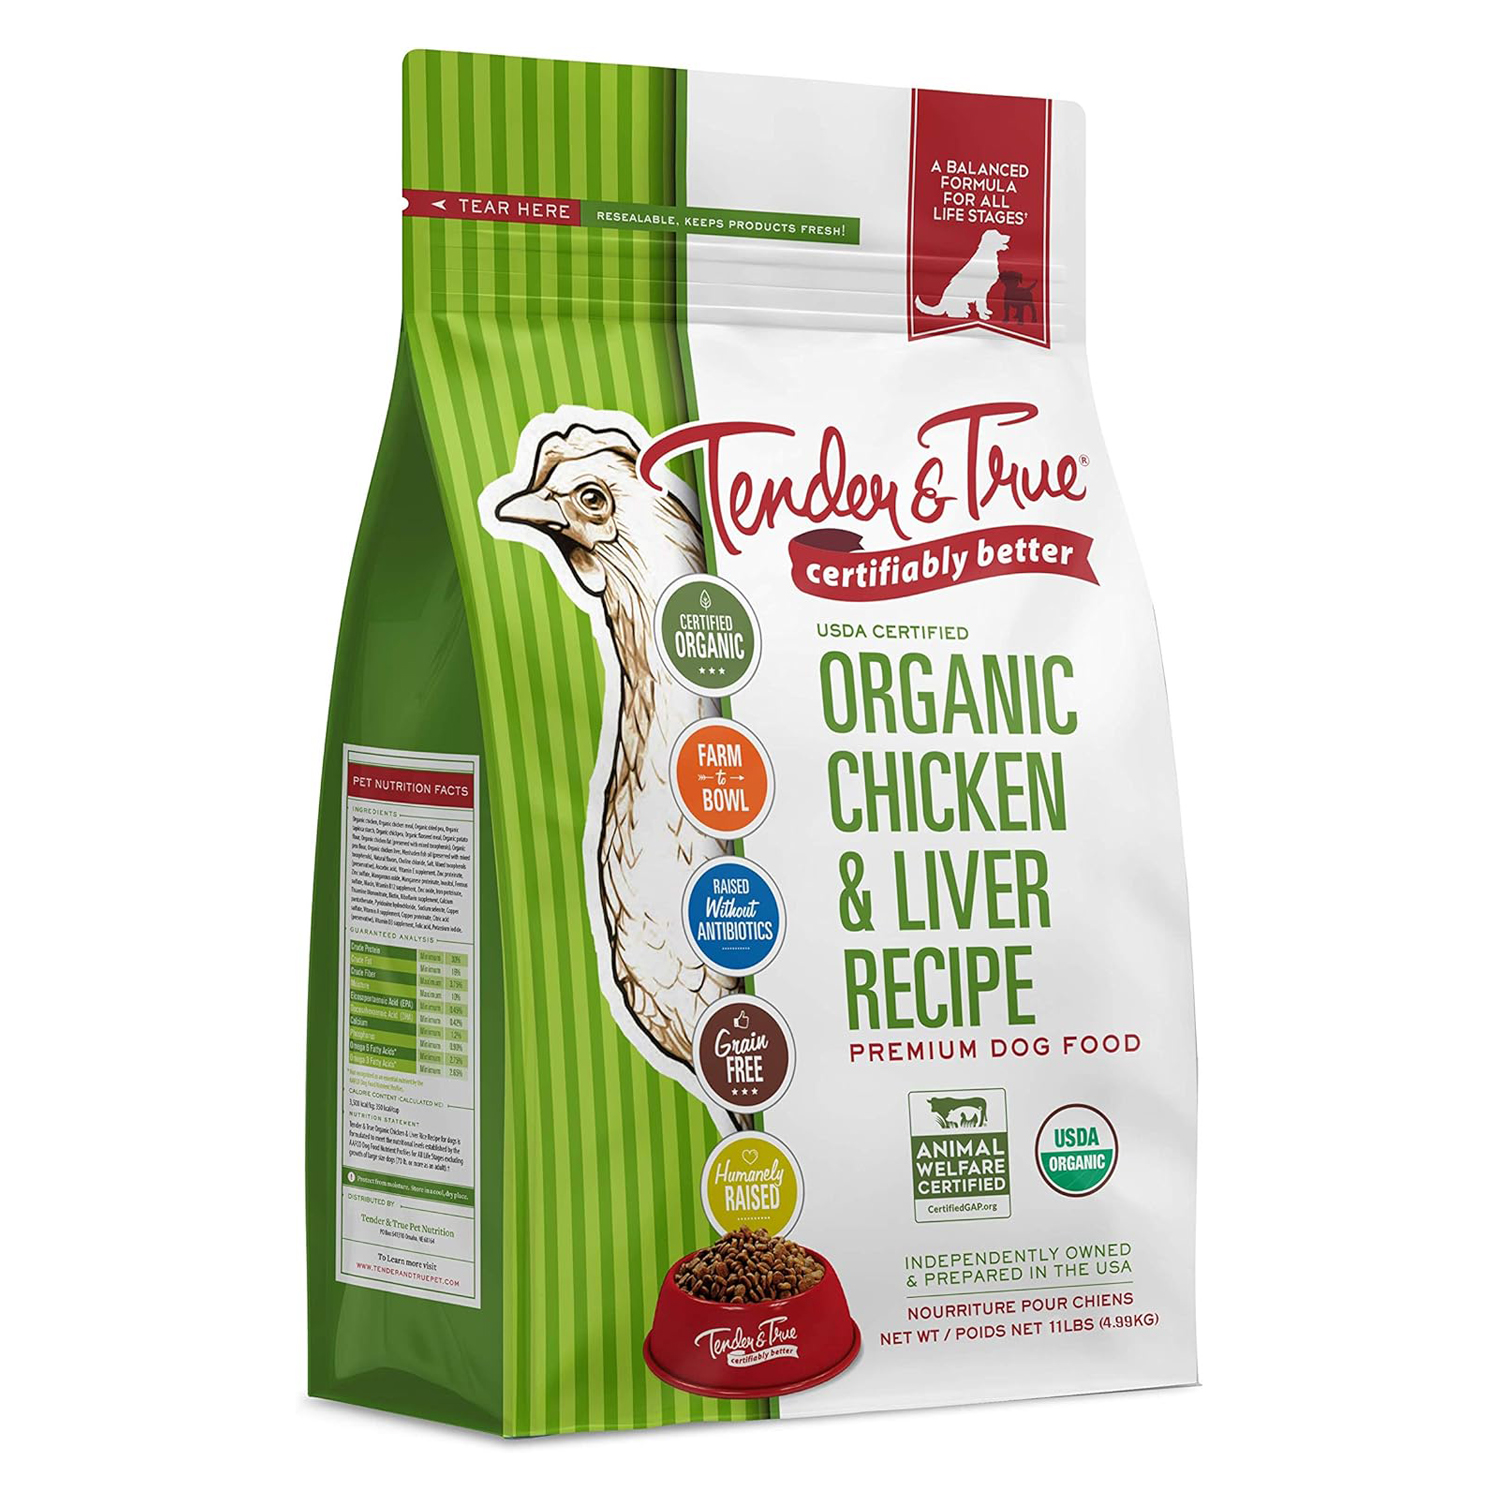 Tender & True Organic Chicken & Liver Recipe Dog Food